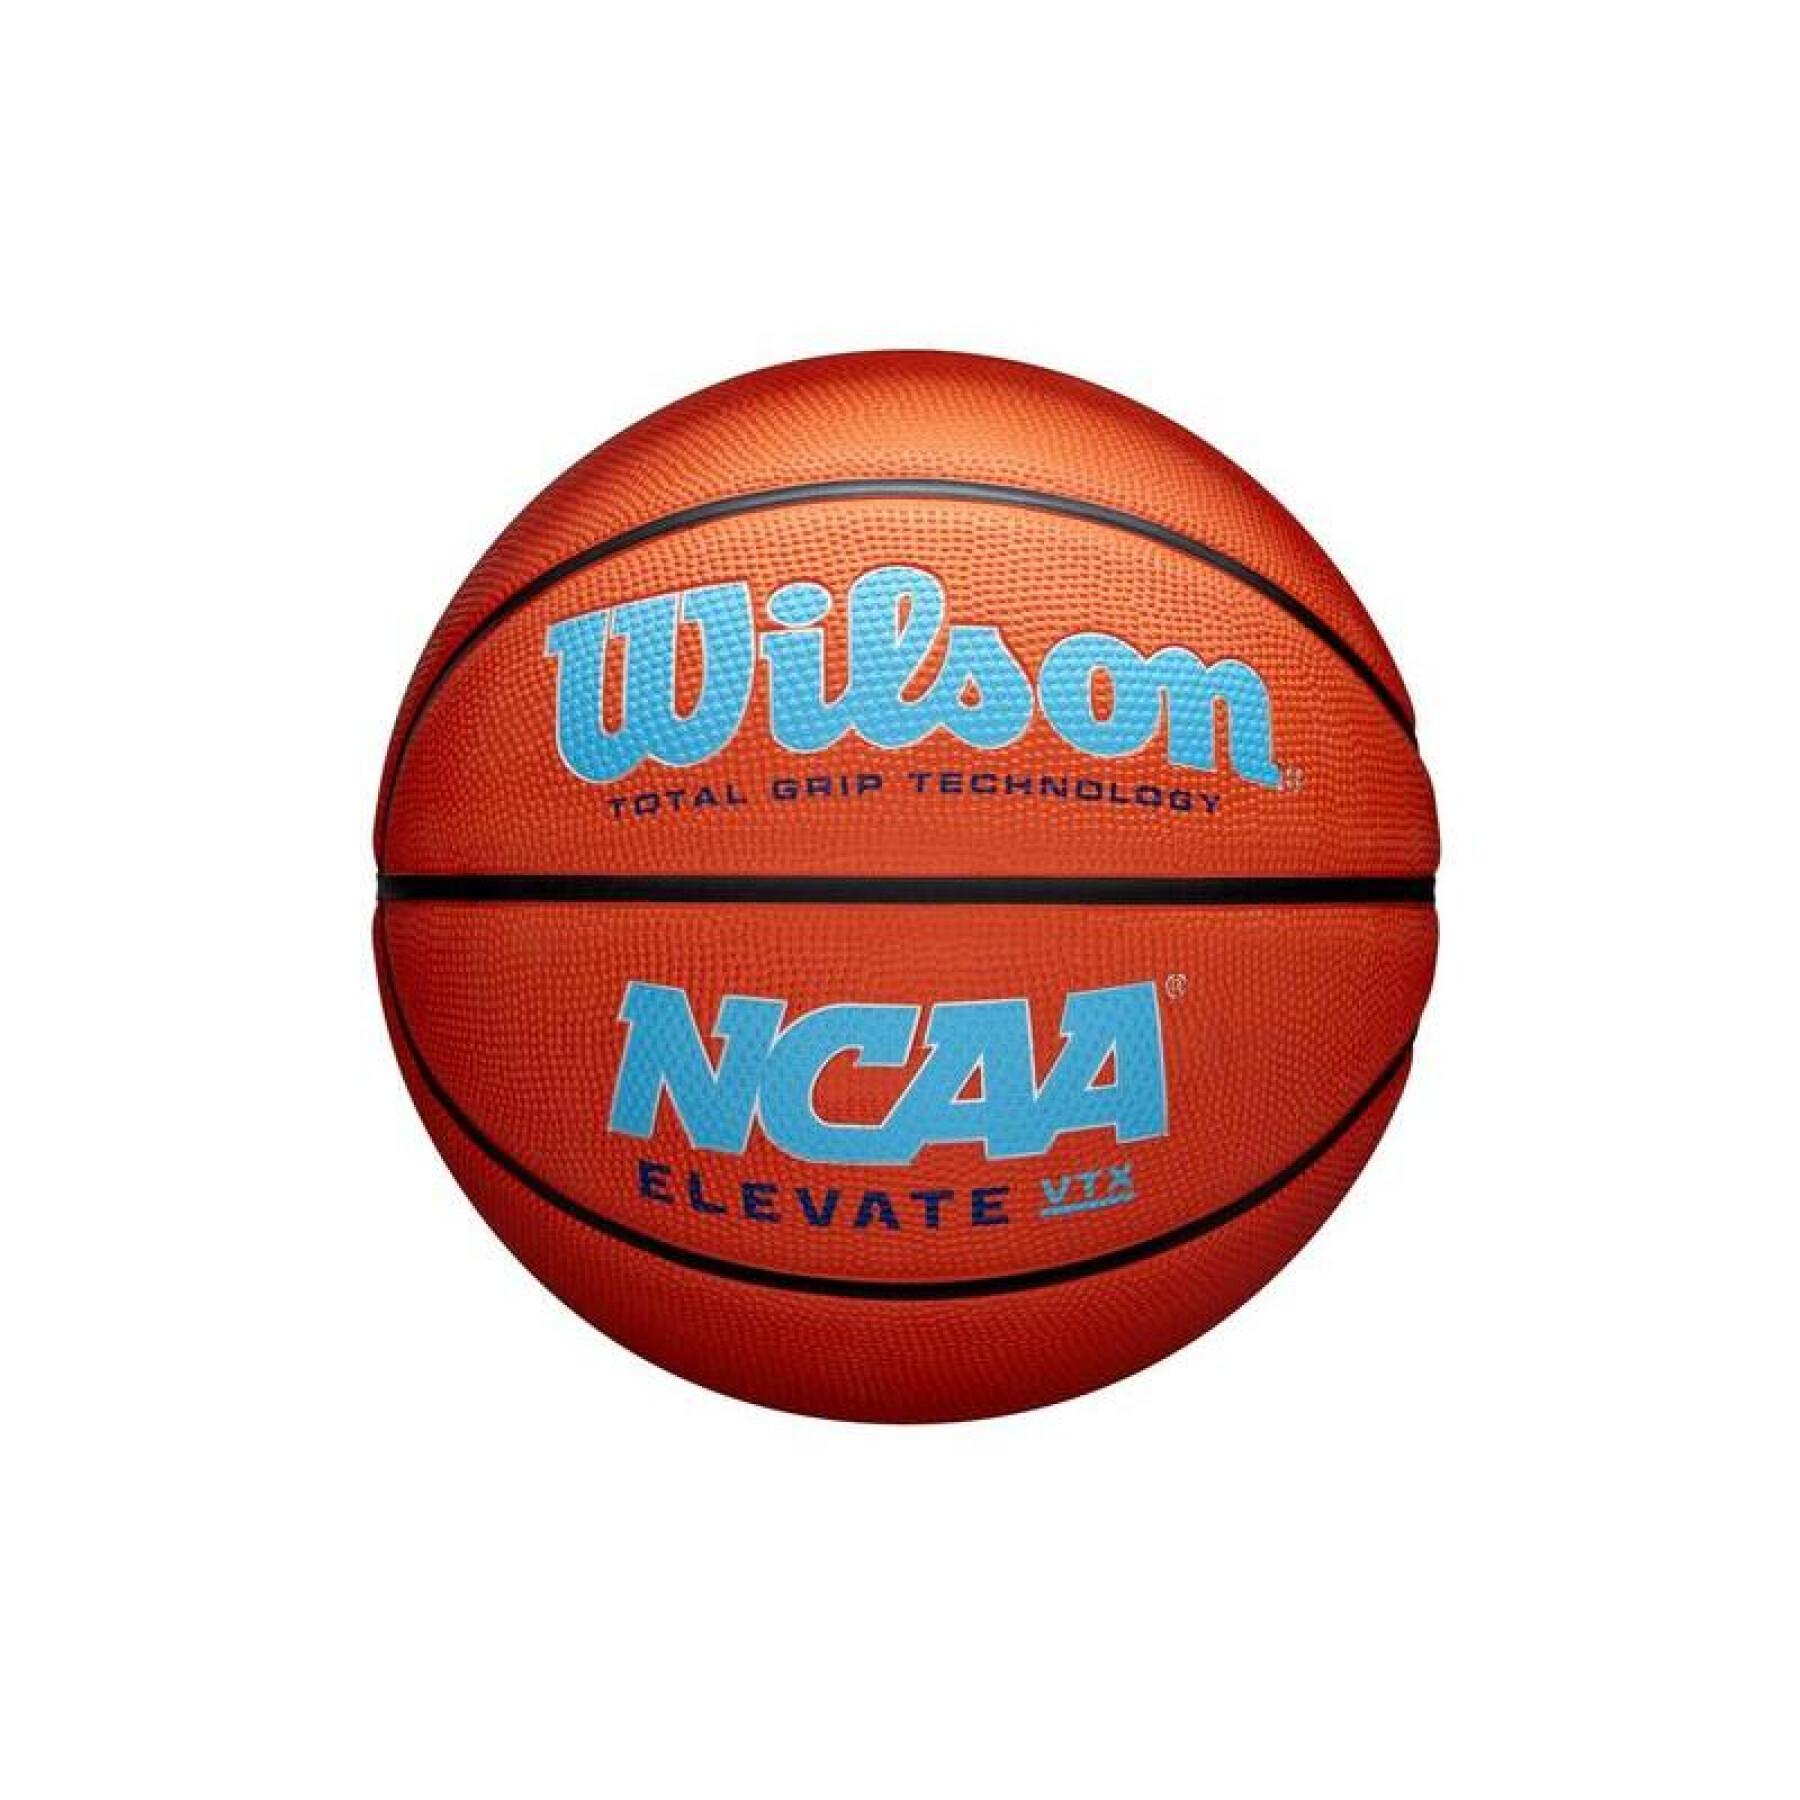 Ballon Wilson NCAA Elevate Vtx